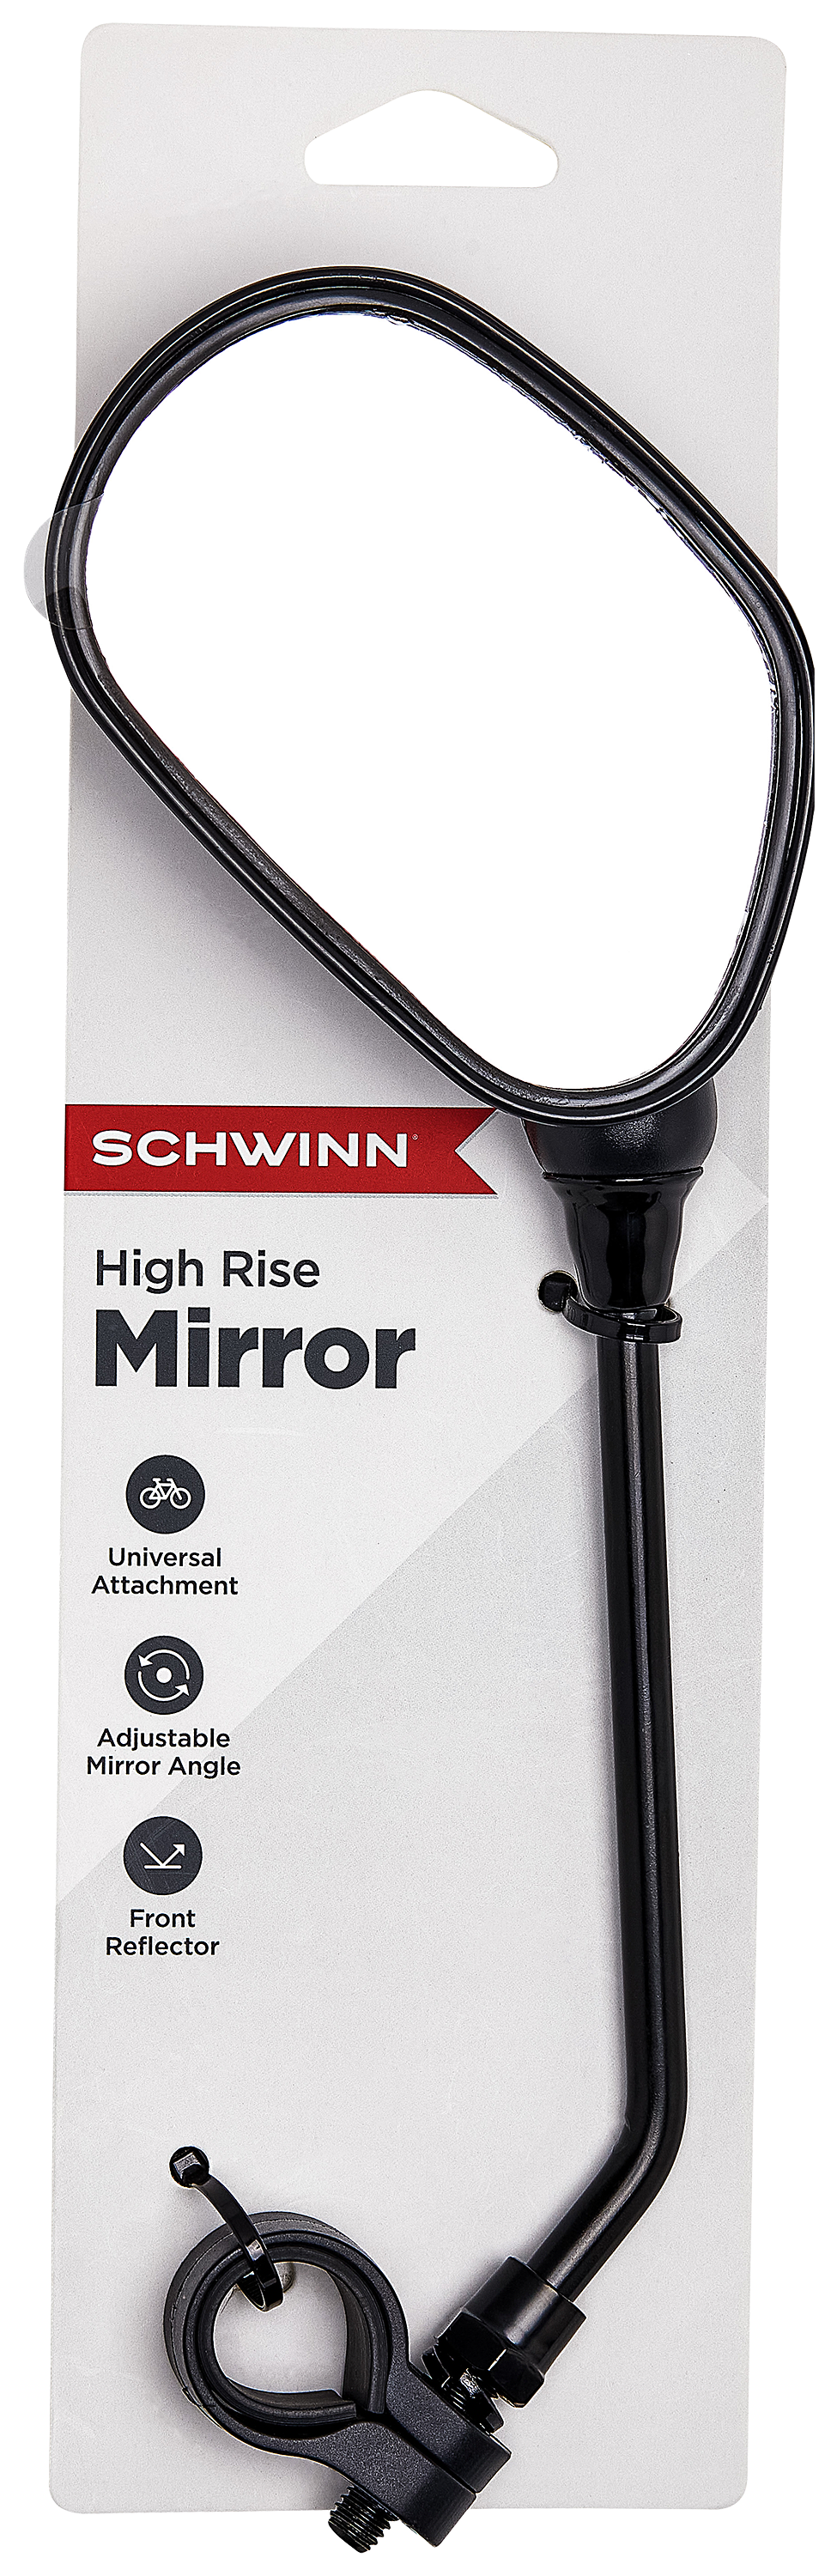 Schwinn Bicycle Mirror